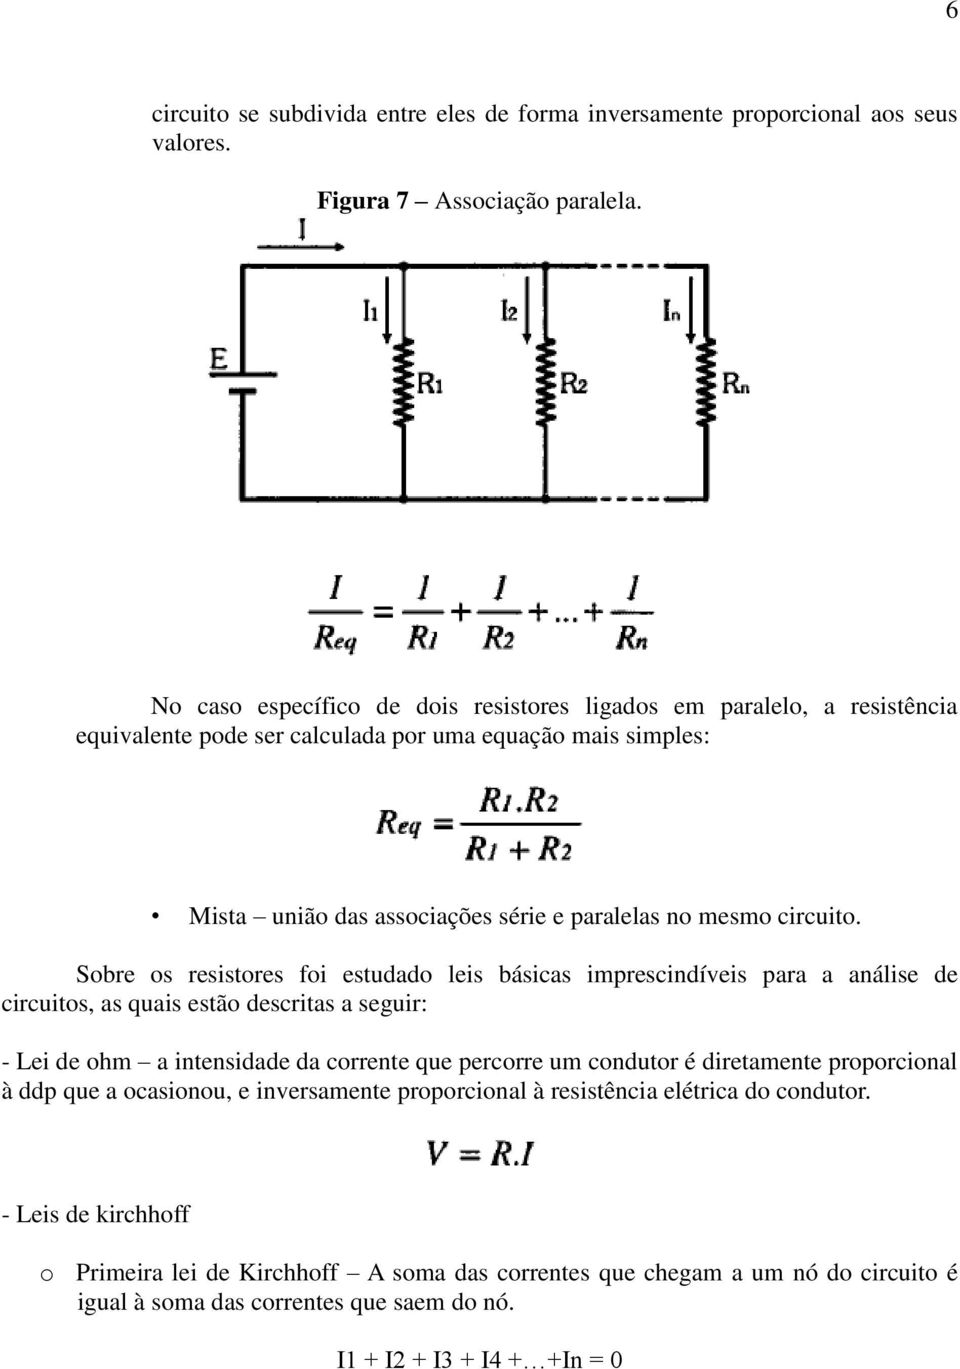 Sobre os resistores foi estudado leis básicas imprescindíveis para a análise de circuitos, as quais estão descritas a seguir: - Lei de ohm a intensidade da corrente que percorre um condutor é